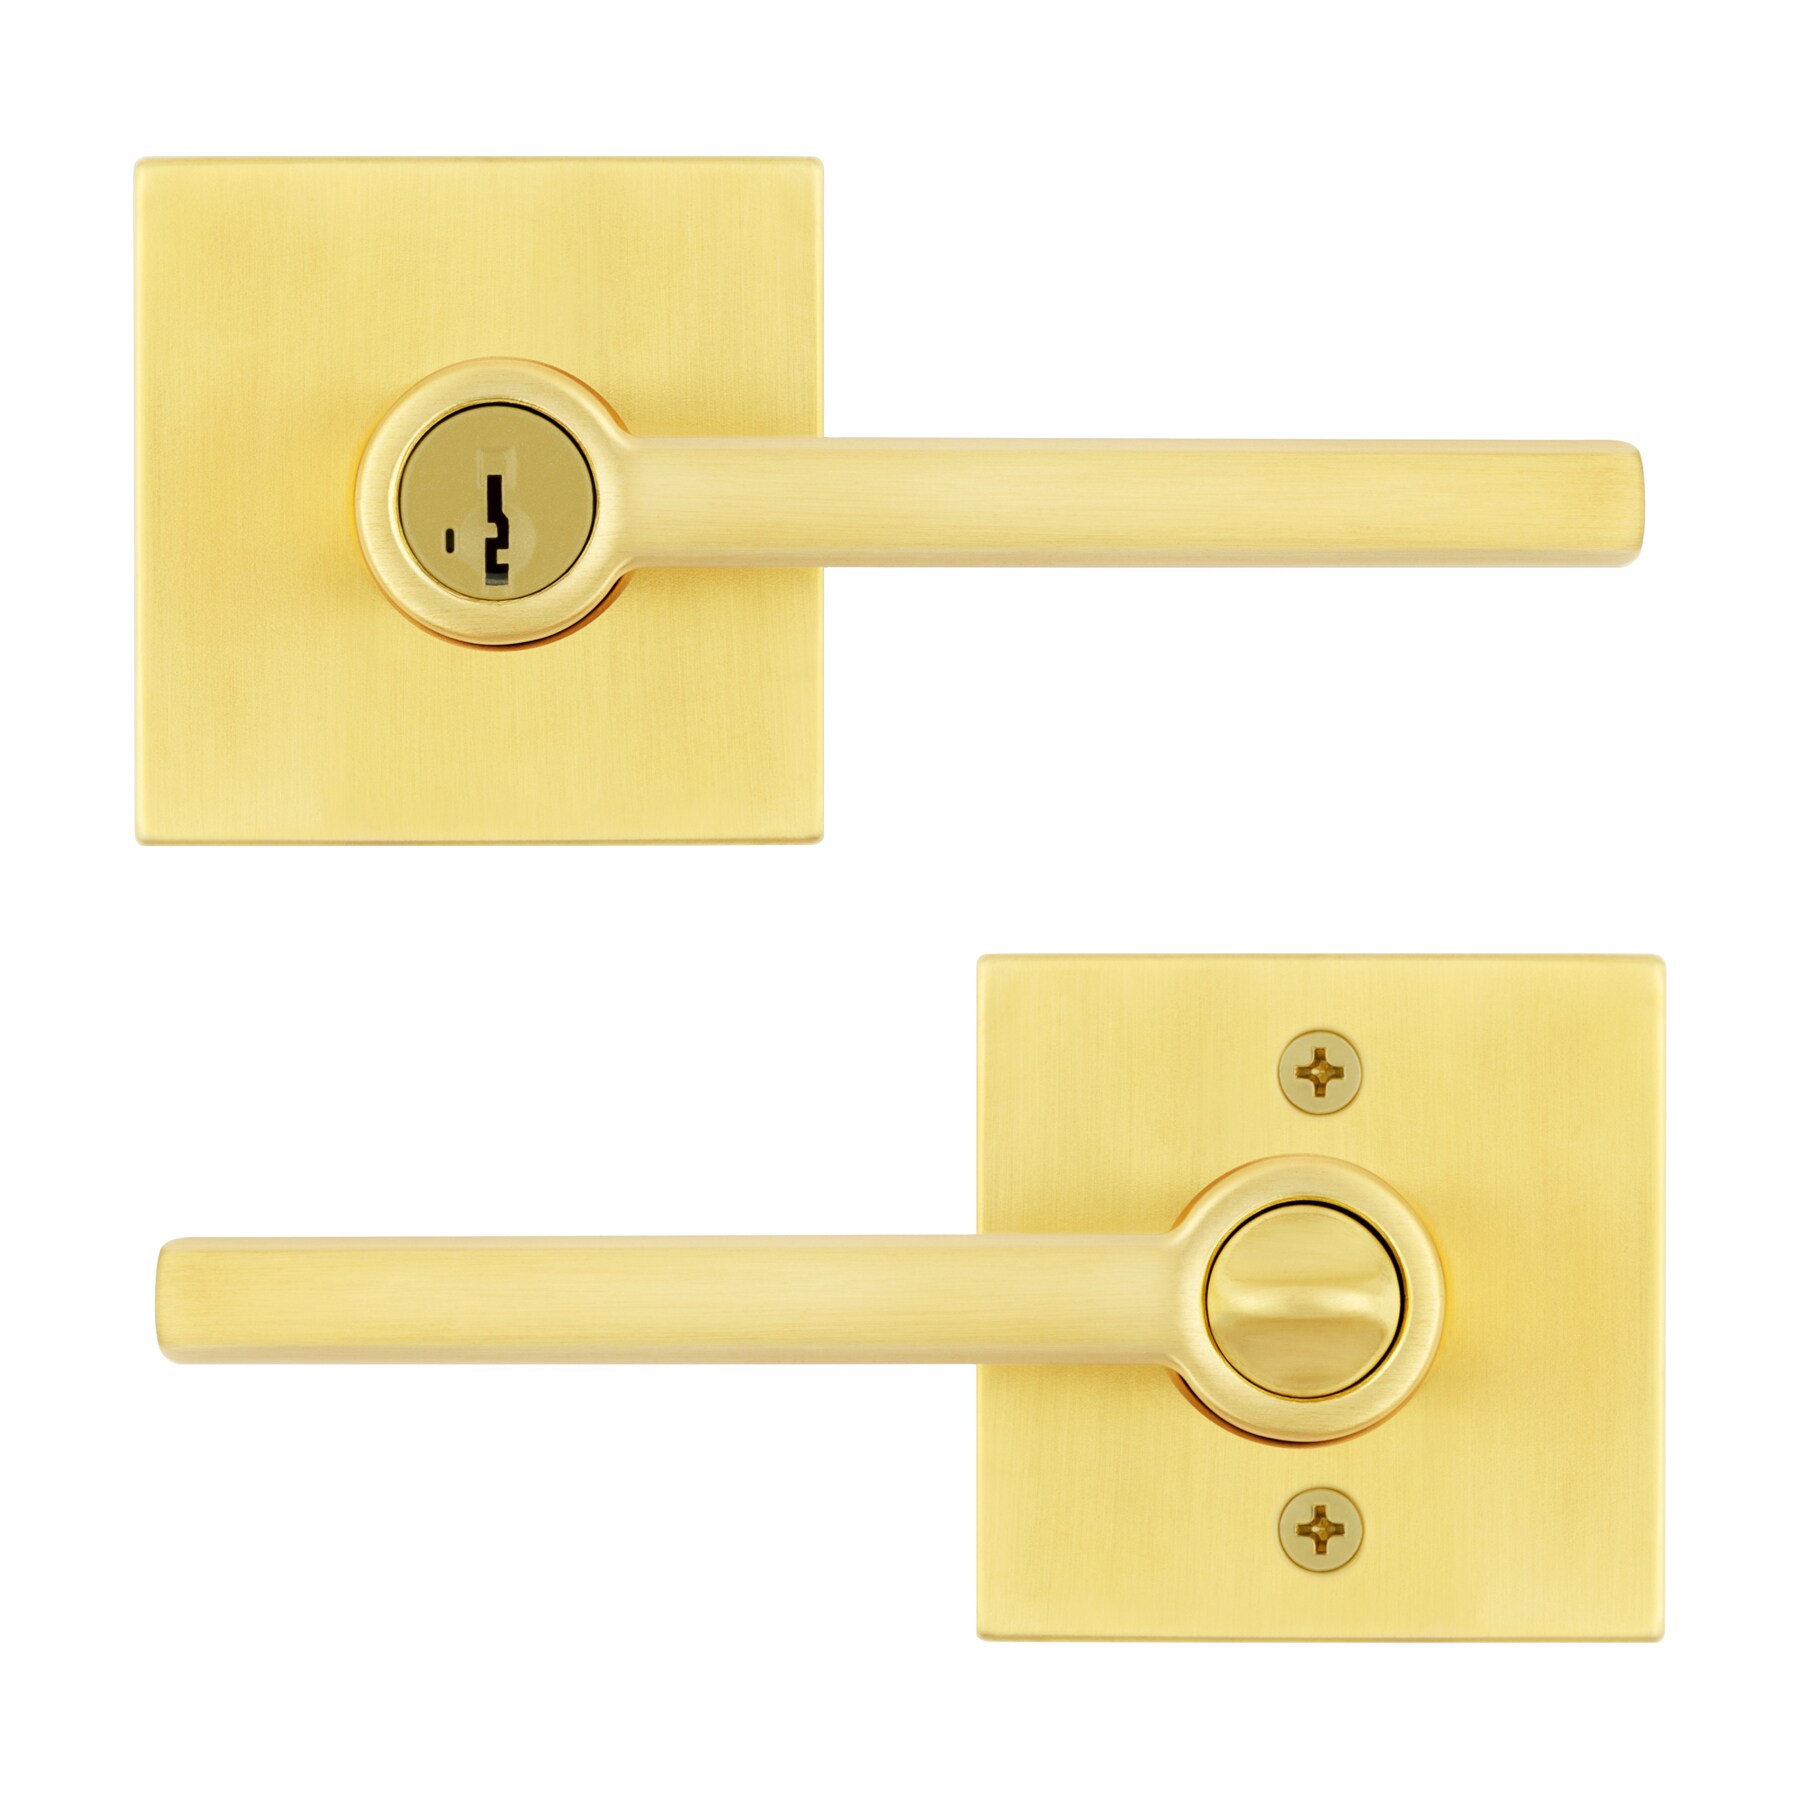 THE DOOR SIGNATURE door handle in Satin Brass and Satin Brass